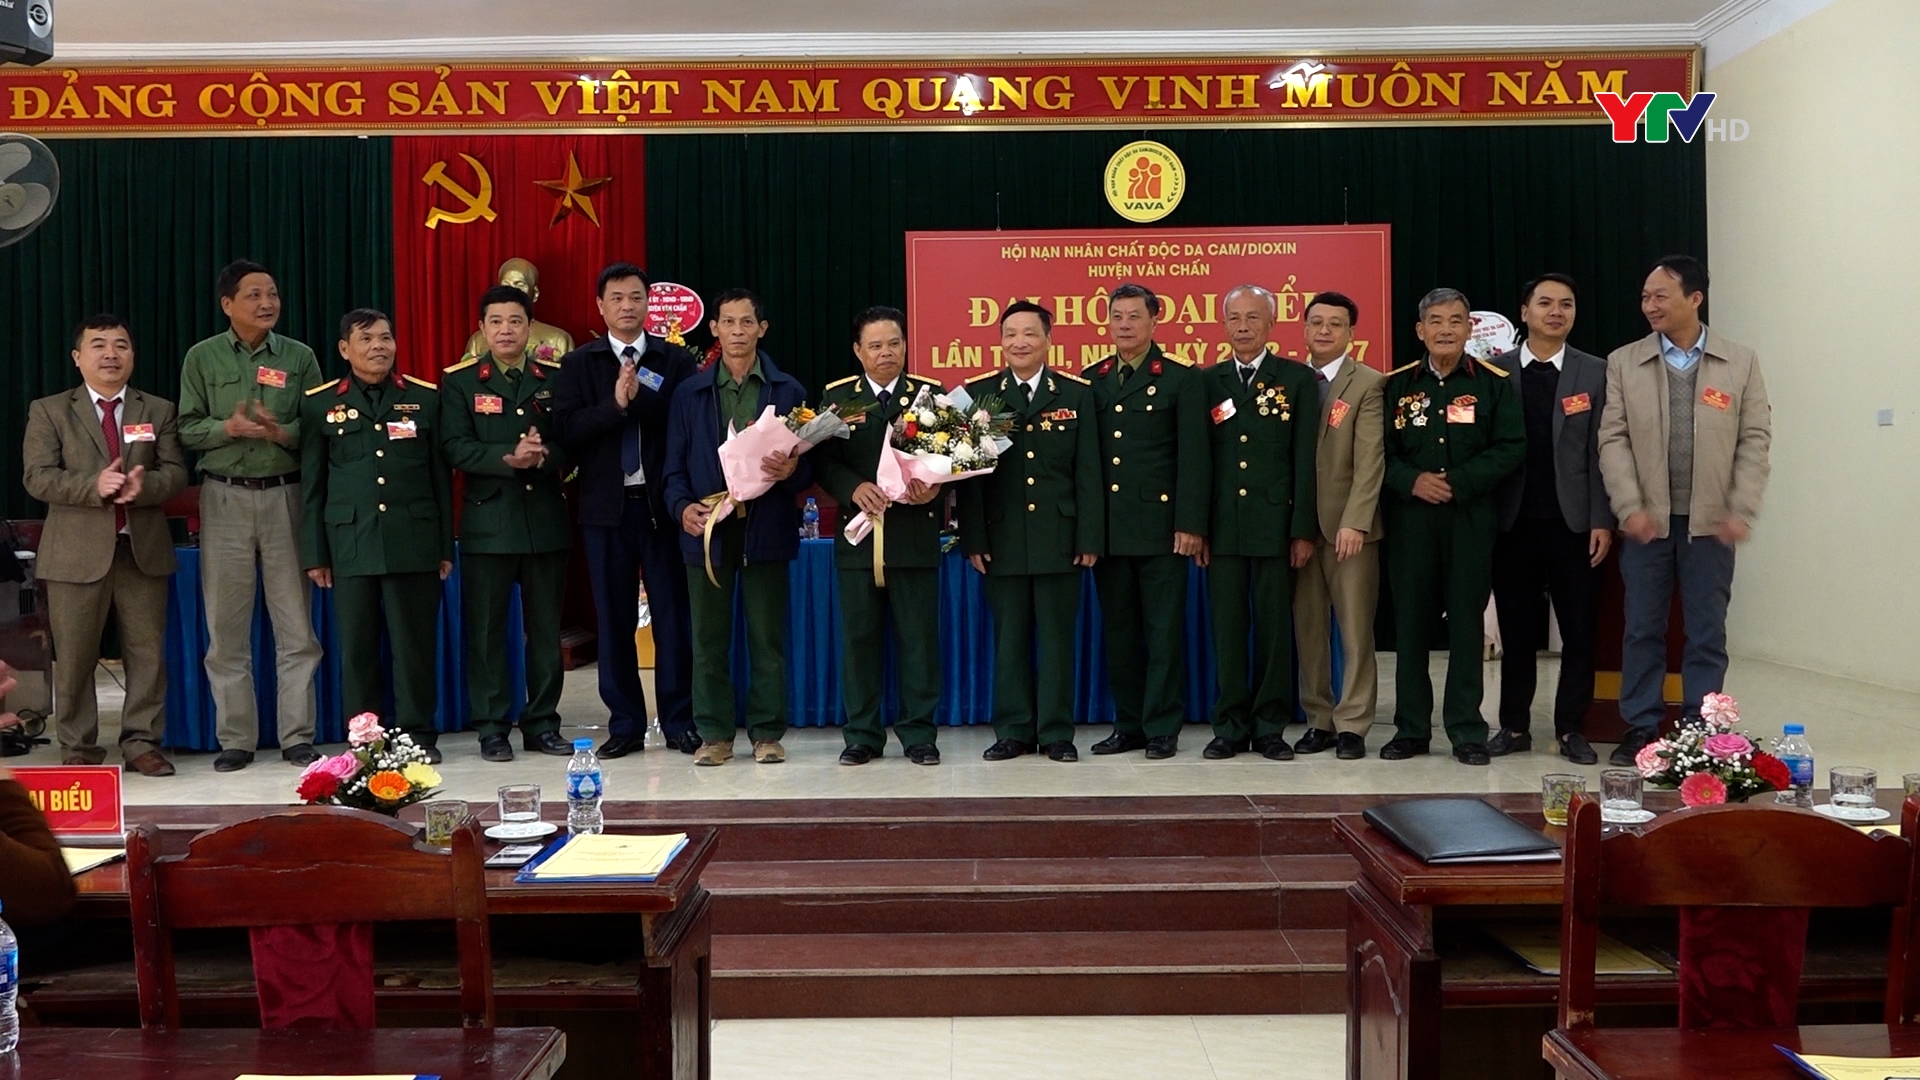 Đại hội đại biểu Hội Nạn nhân chất độc da cam/Đioxin huyện Văn Chấn nhiệm kỳ 2022-2027